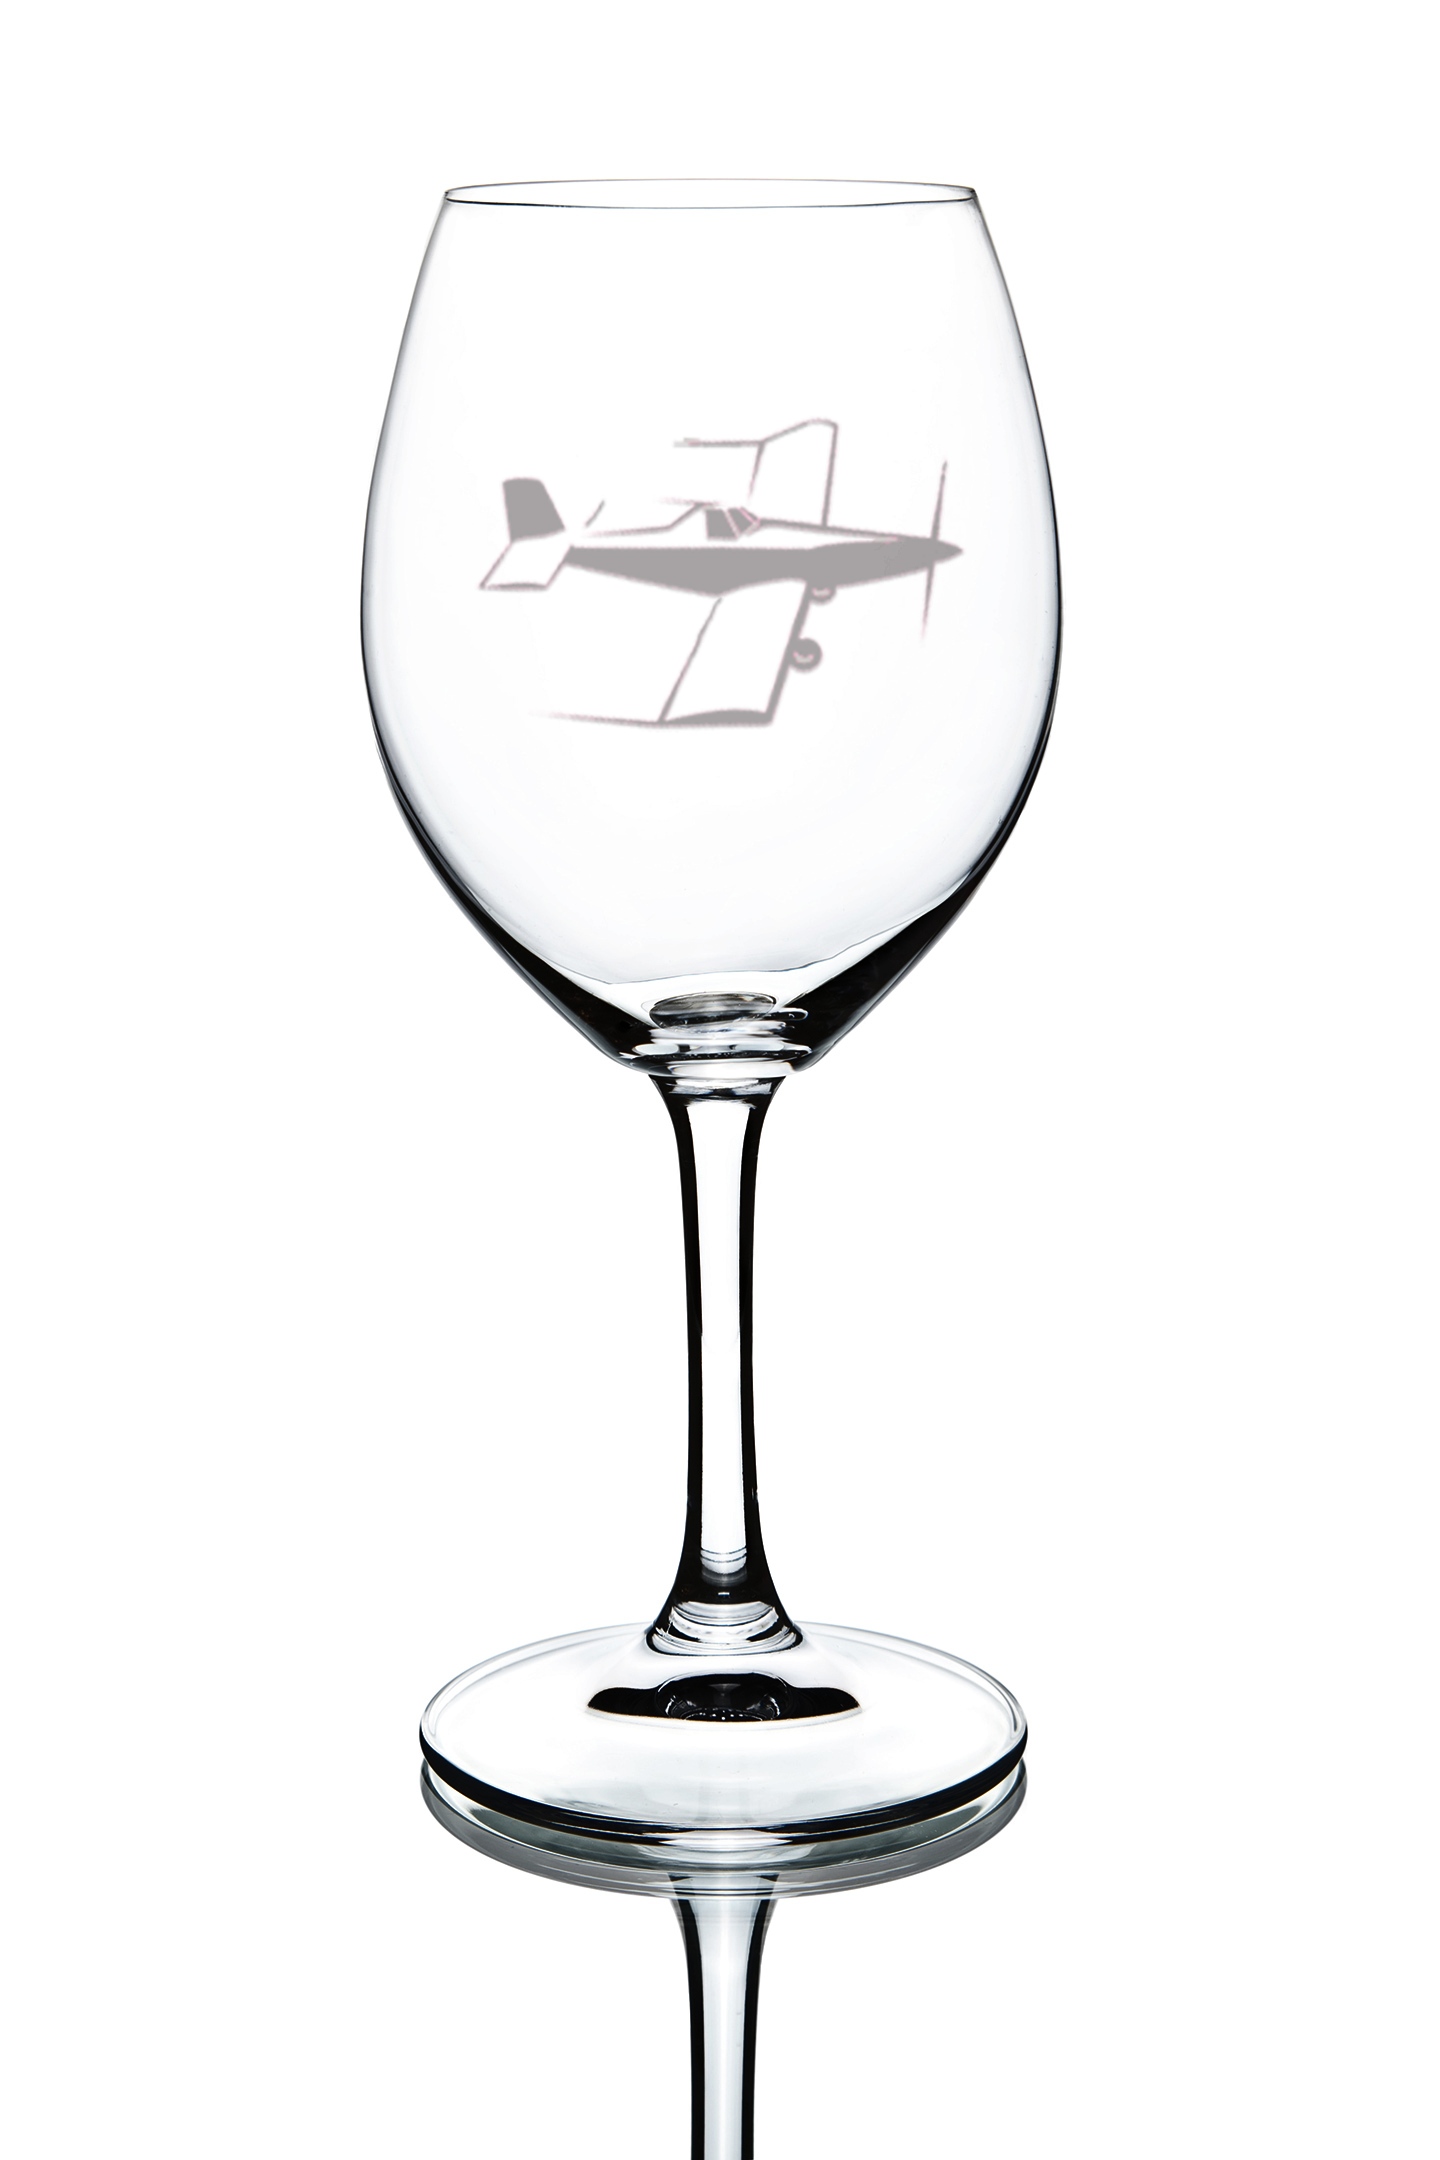 Ag Plane Wine Glasses